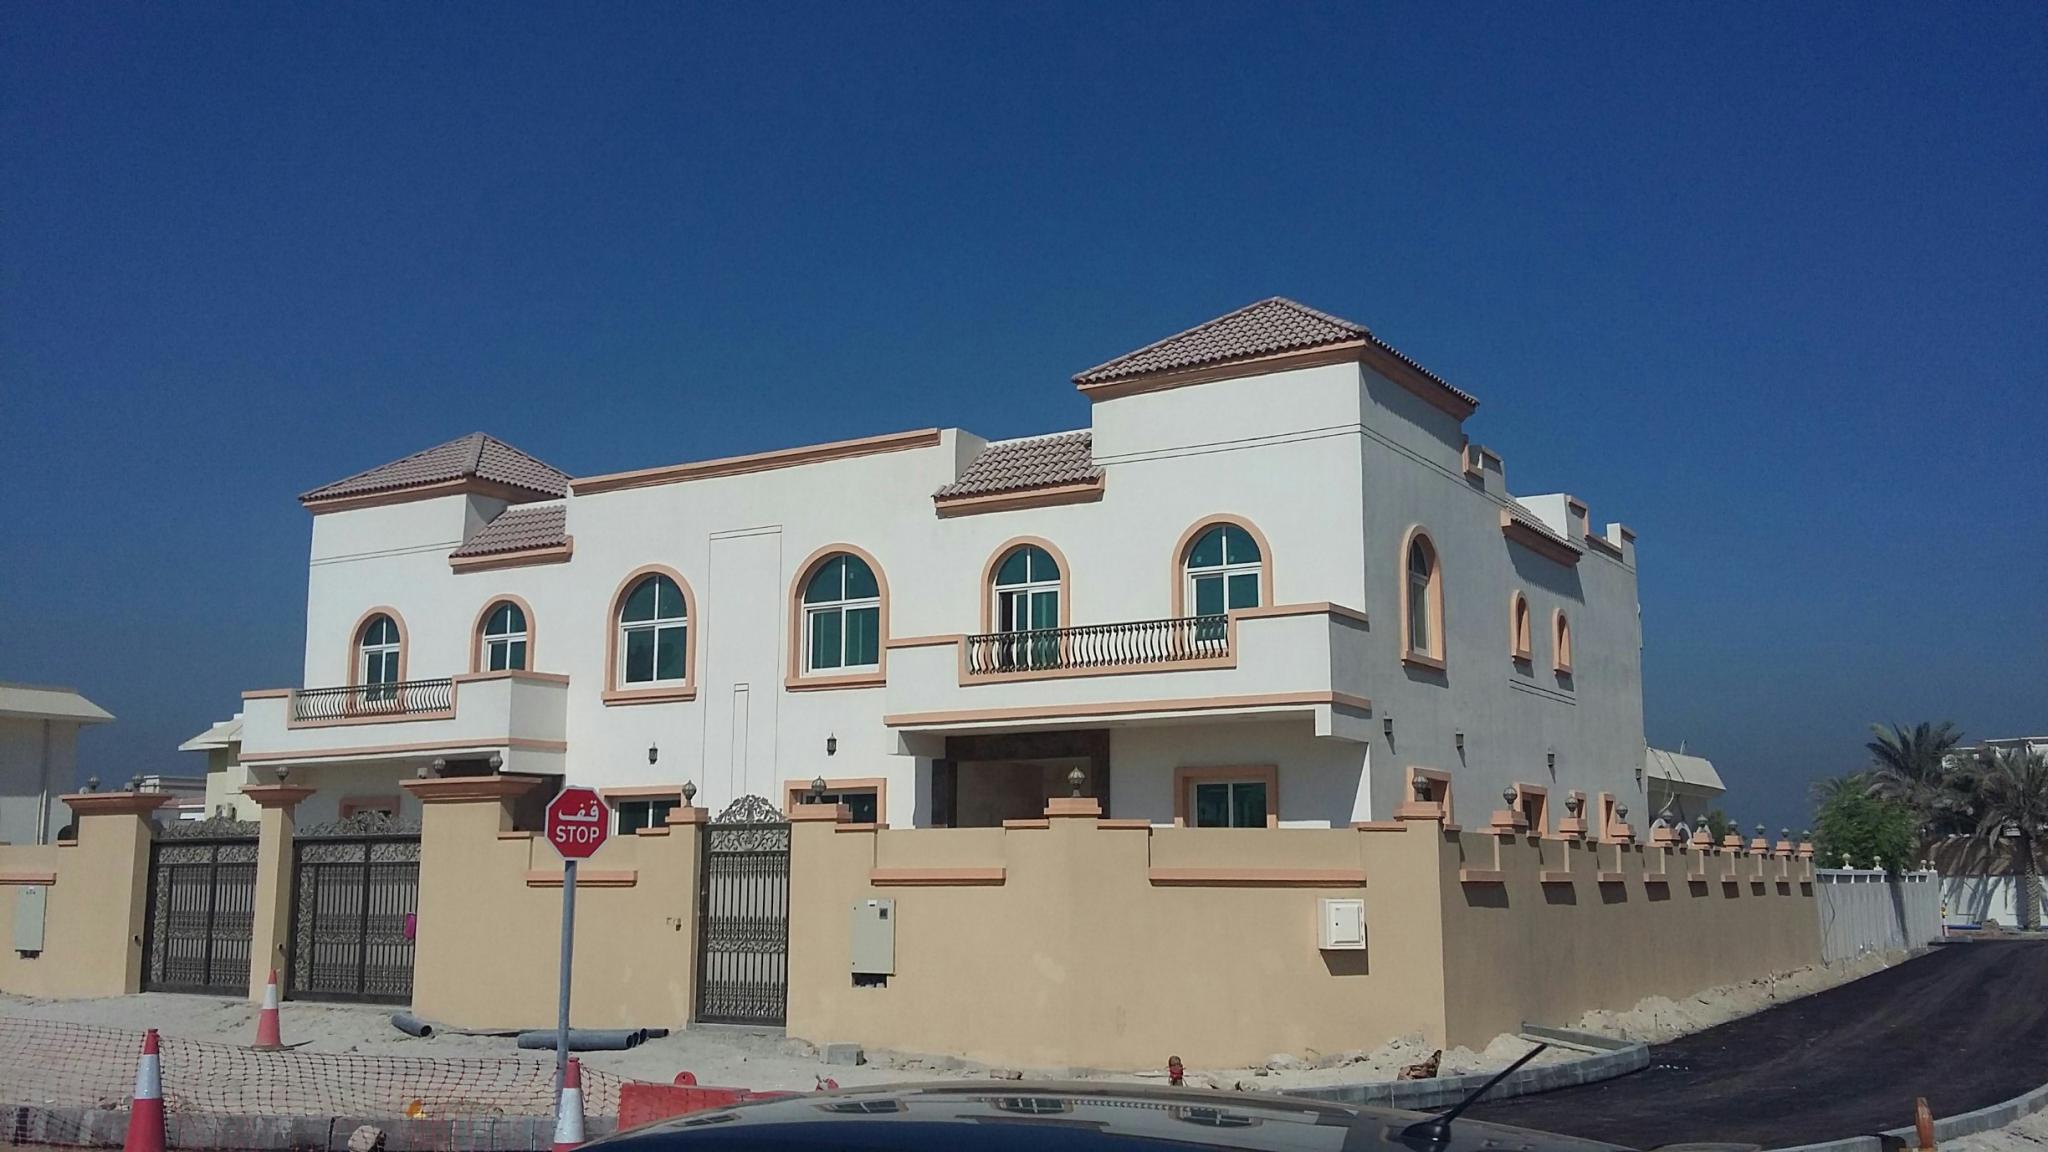 Al Syouh Residential Neighborhood Project - METenders